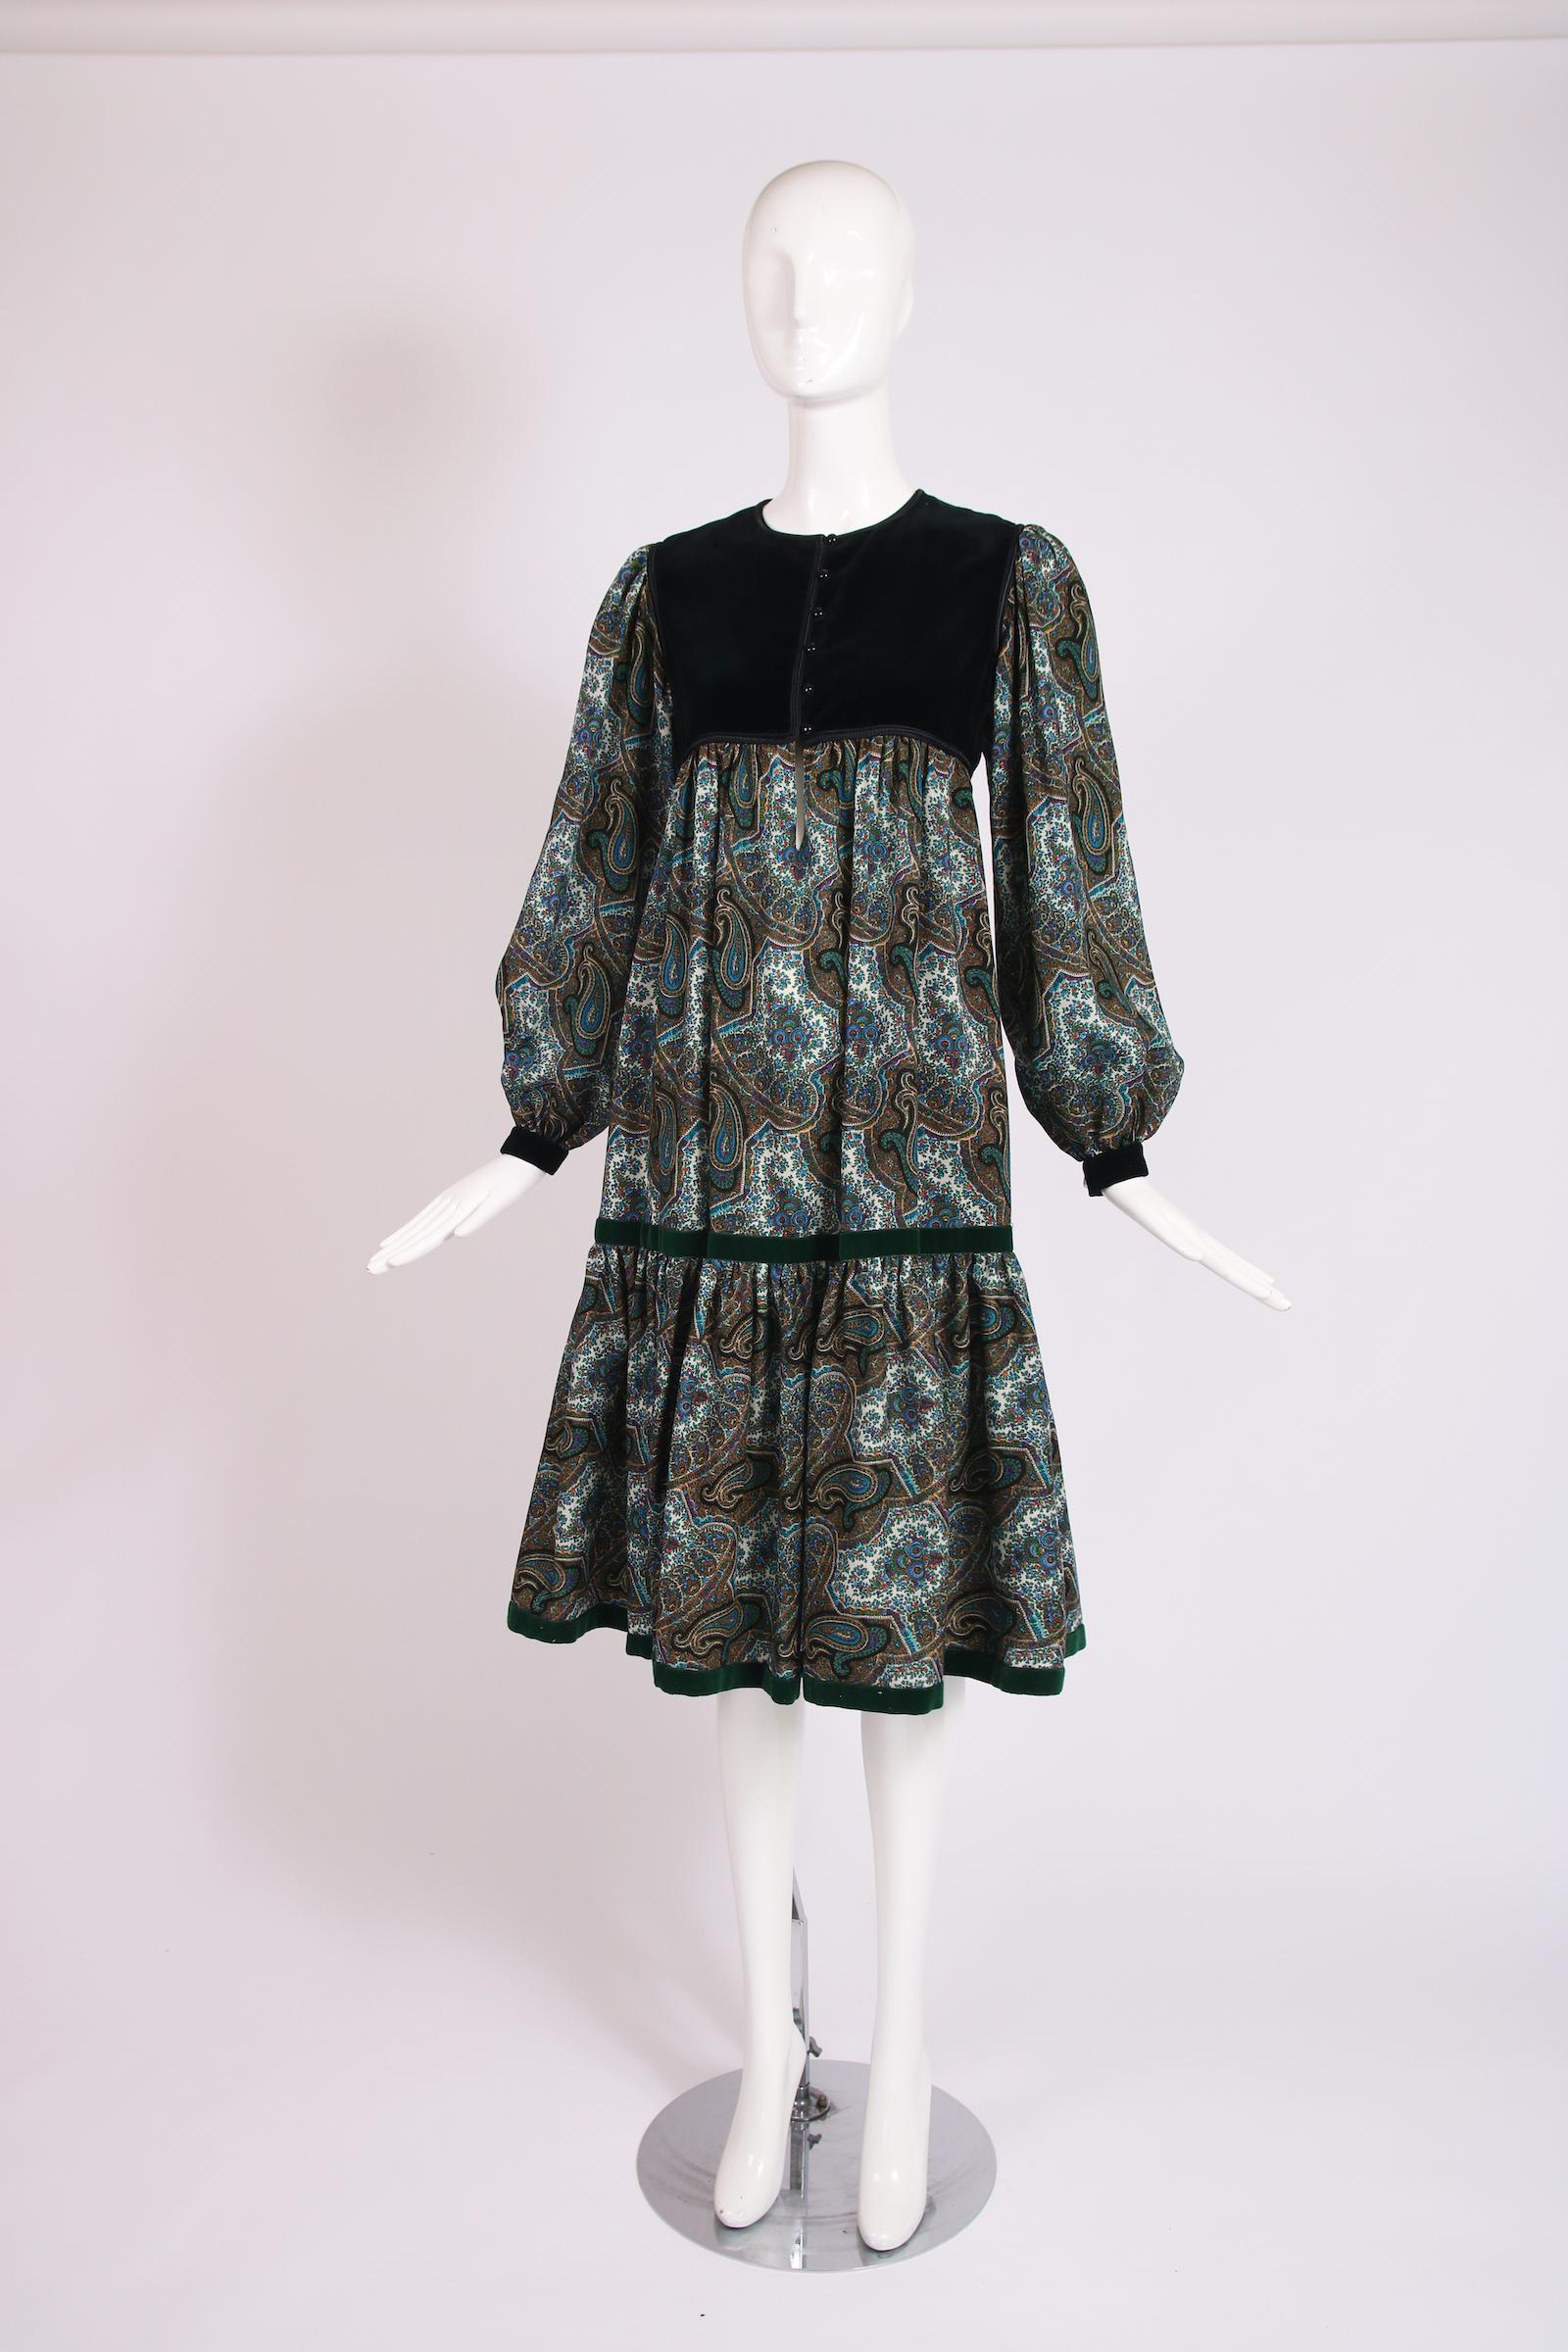 1976 Yves Saint Laurent robe en laine imprimée paisley avec smock en velours noir et bordure en velours vert. En excellent état - étiquette de taille 36. Veuillez consulter les mesures - le tour de poitrine et le haut de la cage thoracique sont TRES